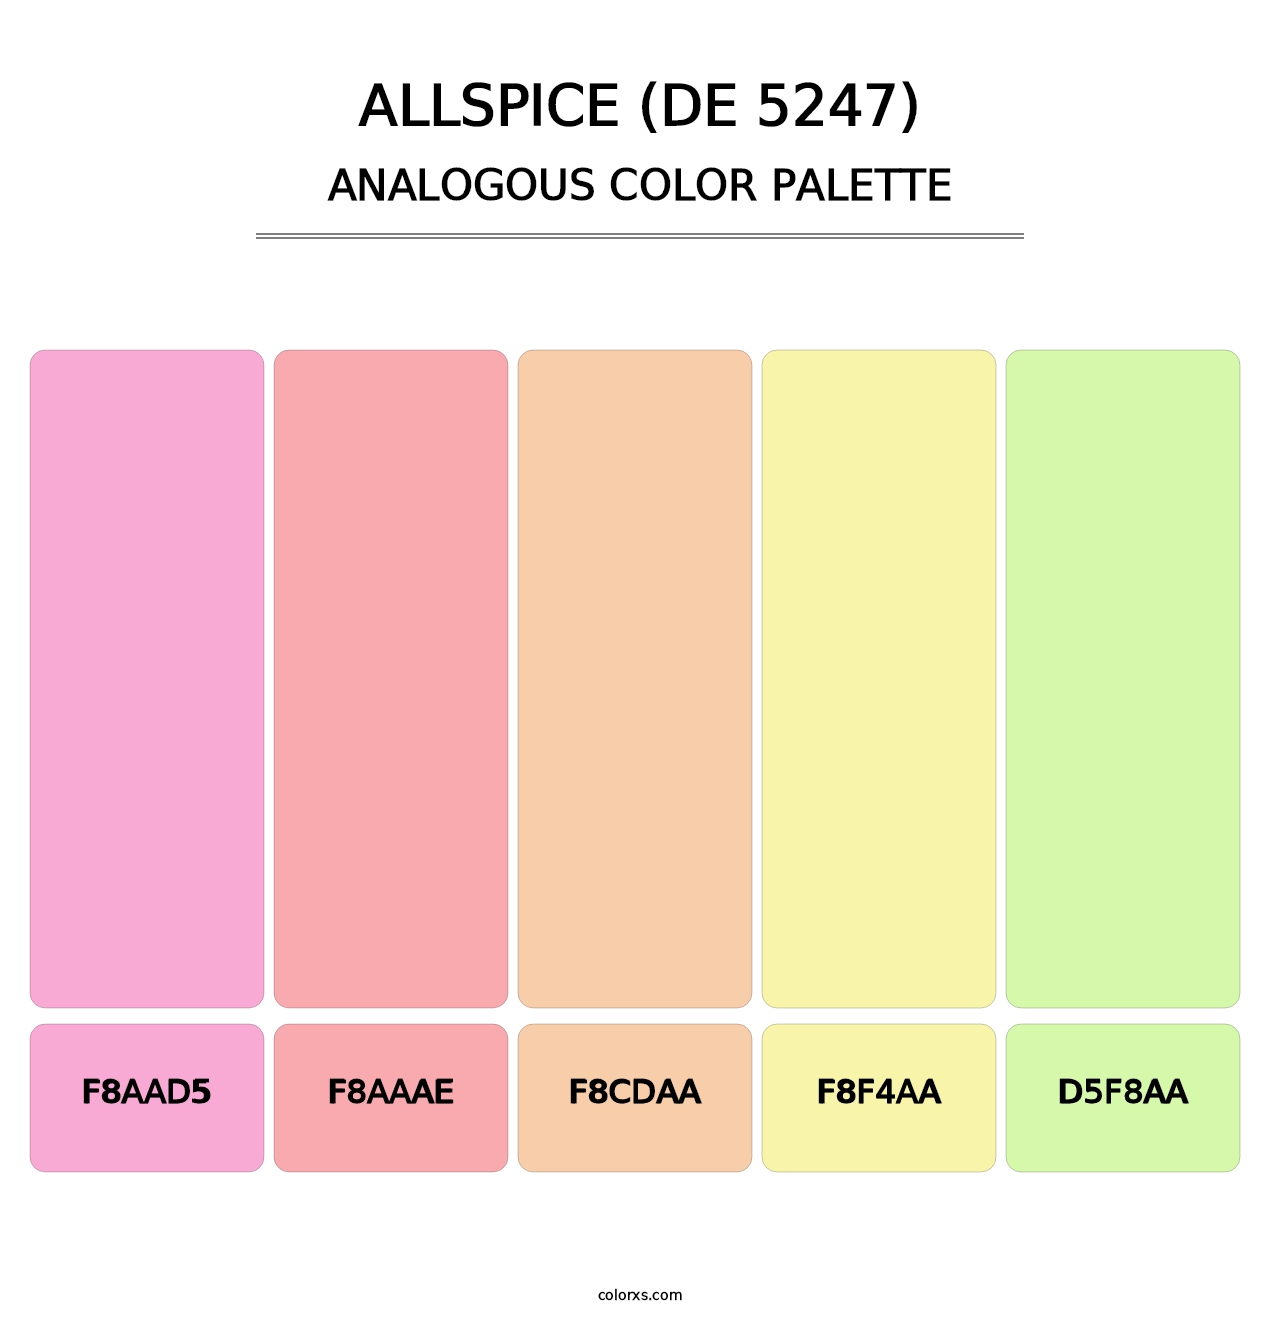 Allspice (DE 5247) - Analogous Color Palette